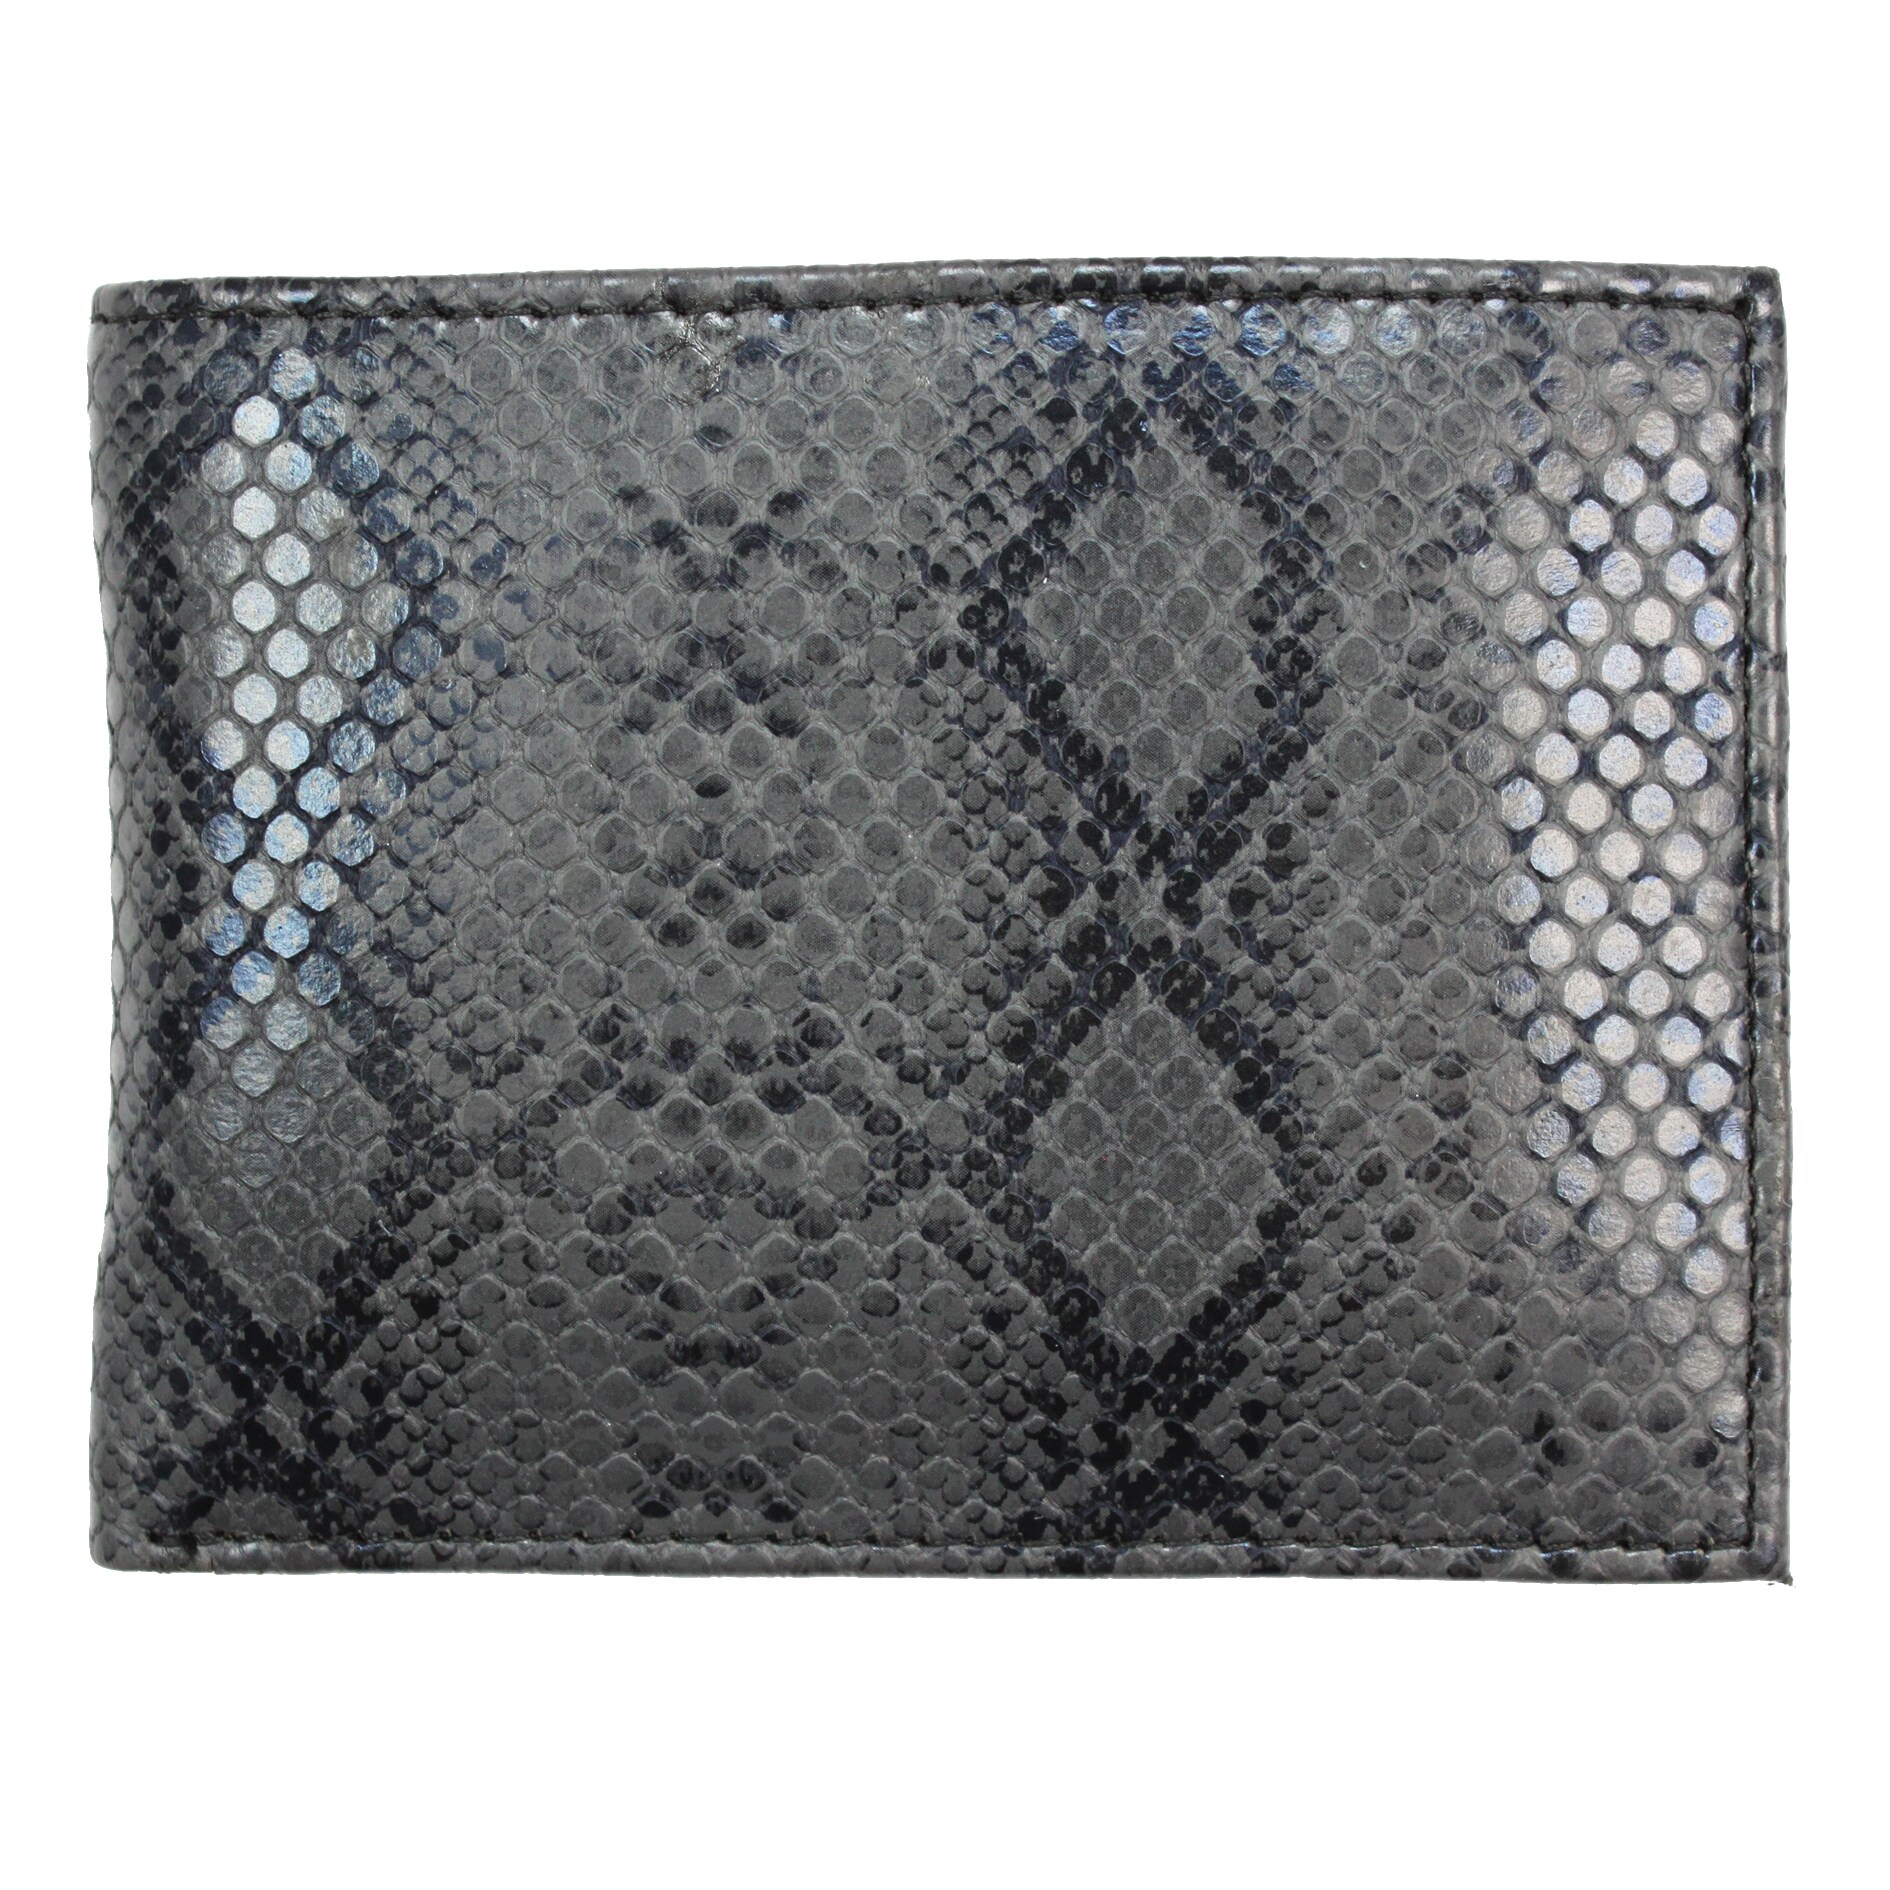 Mens Black Python embossed Leather Bi fold Wallet